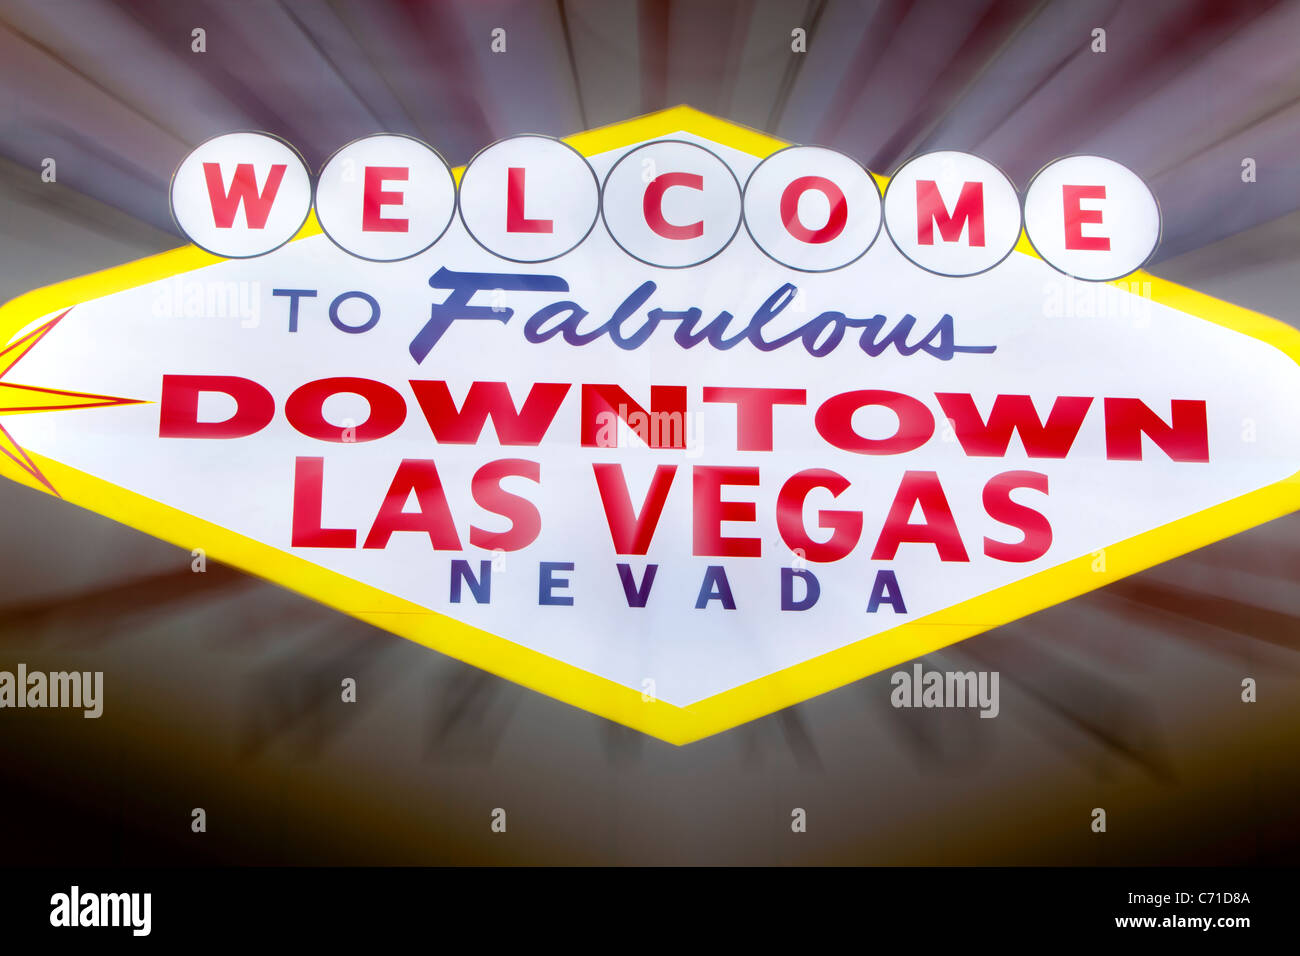 États-unis d'Amérique, Nevada, Las Vegas, le centre-ville, zone Fremont East, néon Vegas sign, dusk Banque D'Images